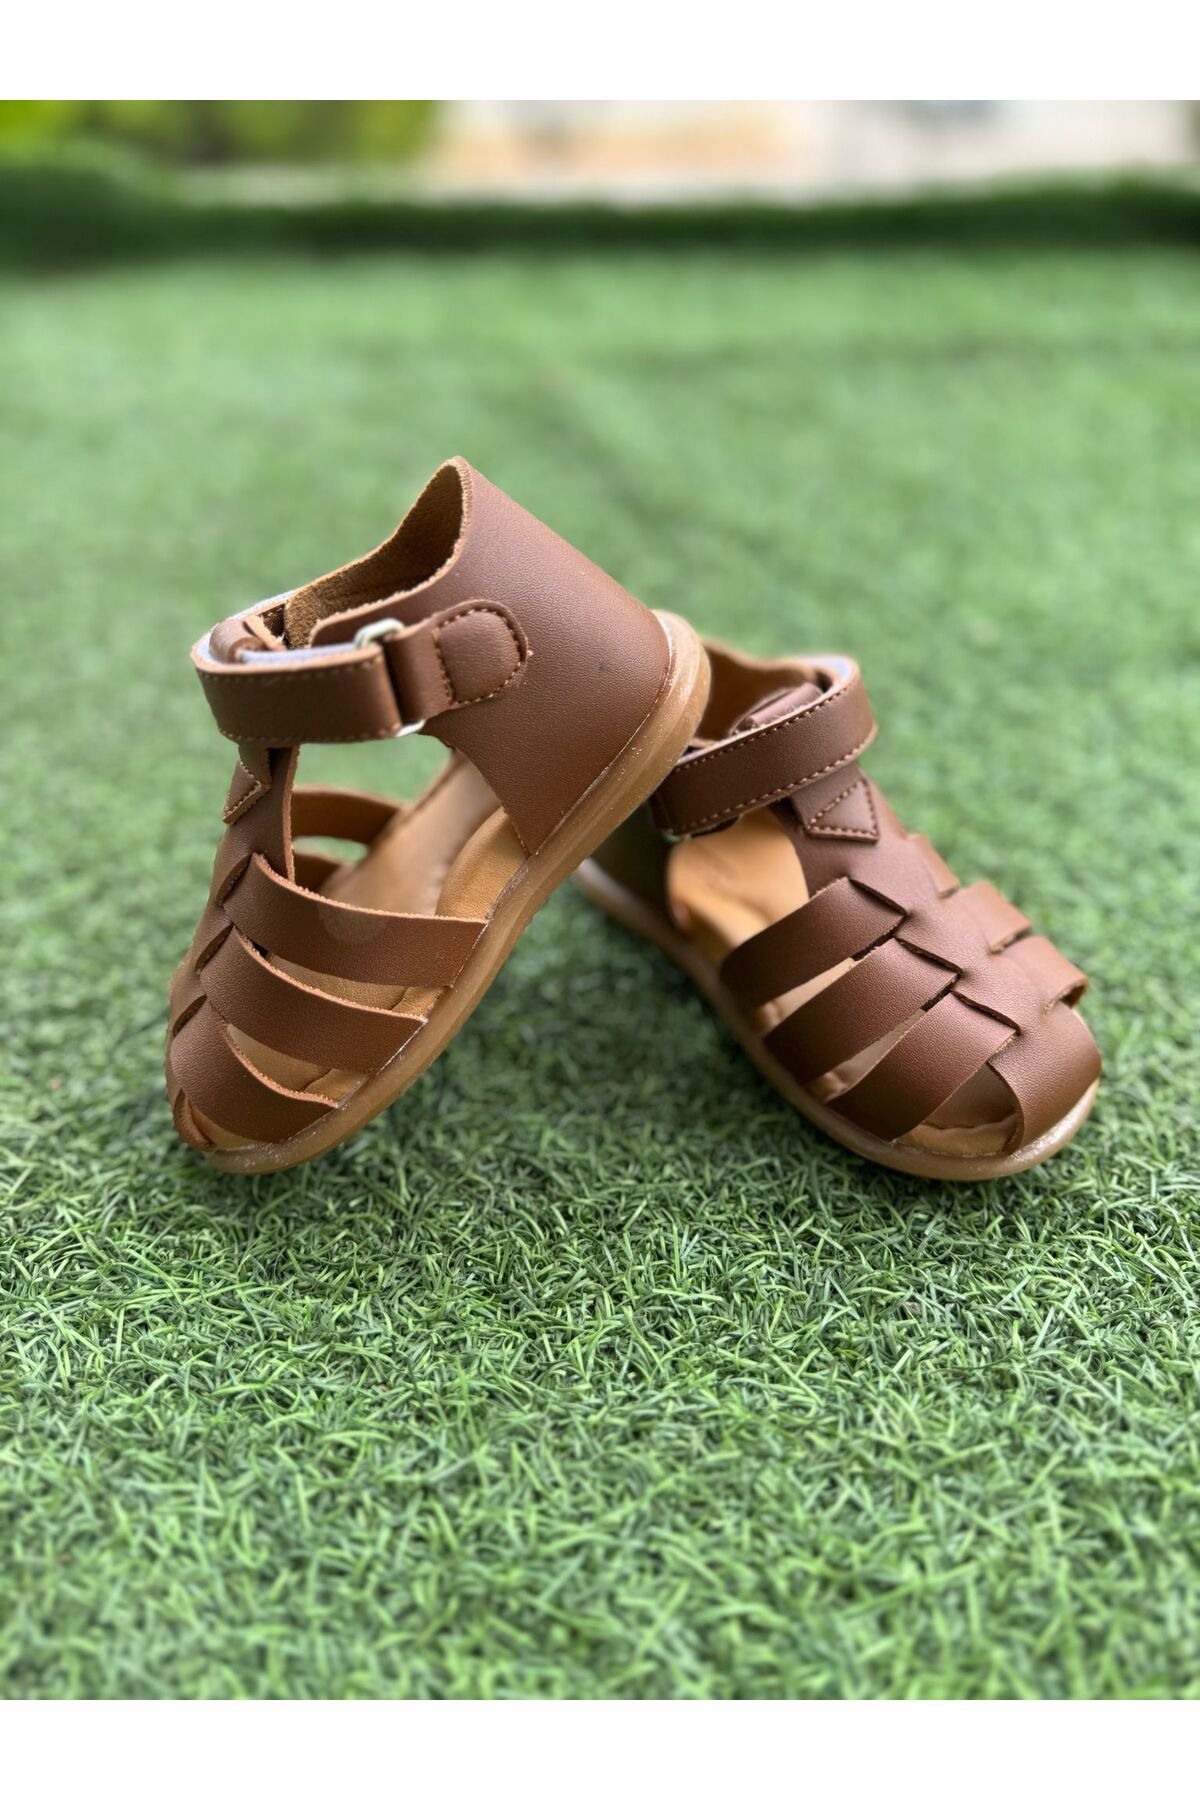 macco shoes Kız Erkek Bebek Ortopedik Ayakkabı Sandalet